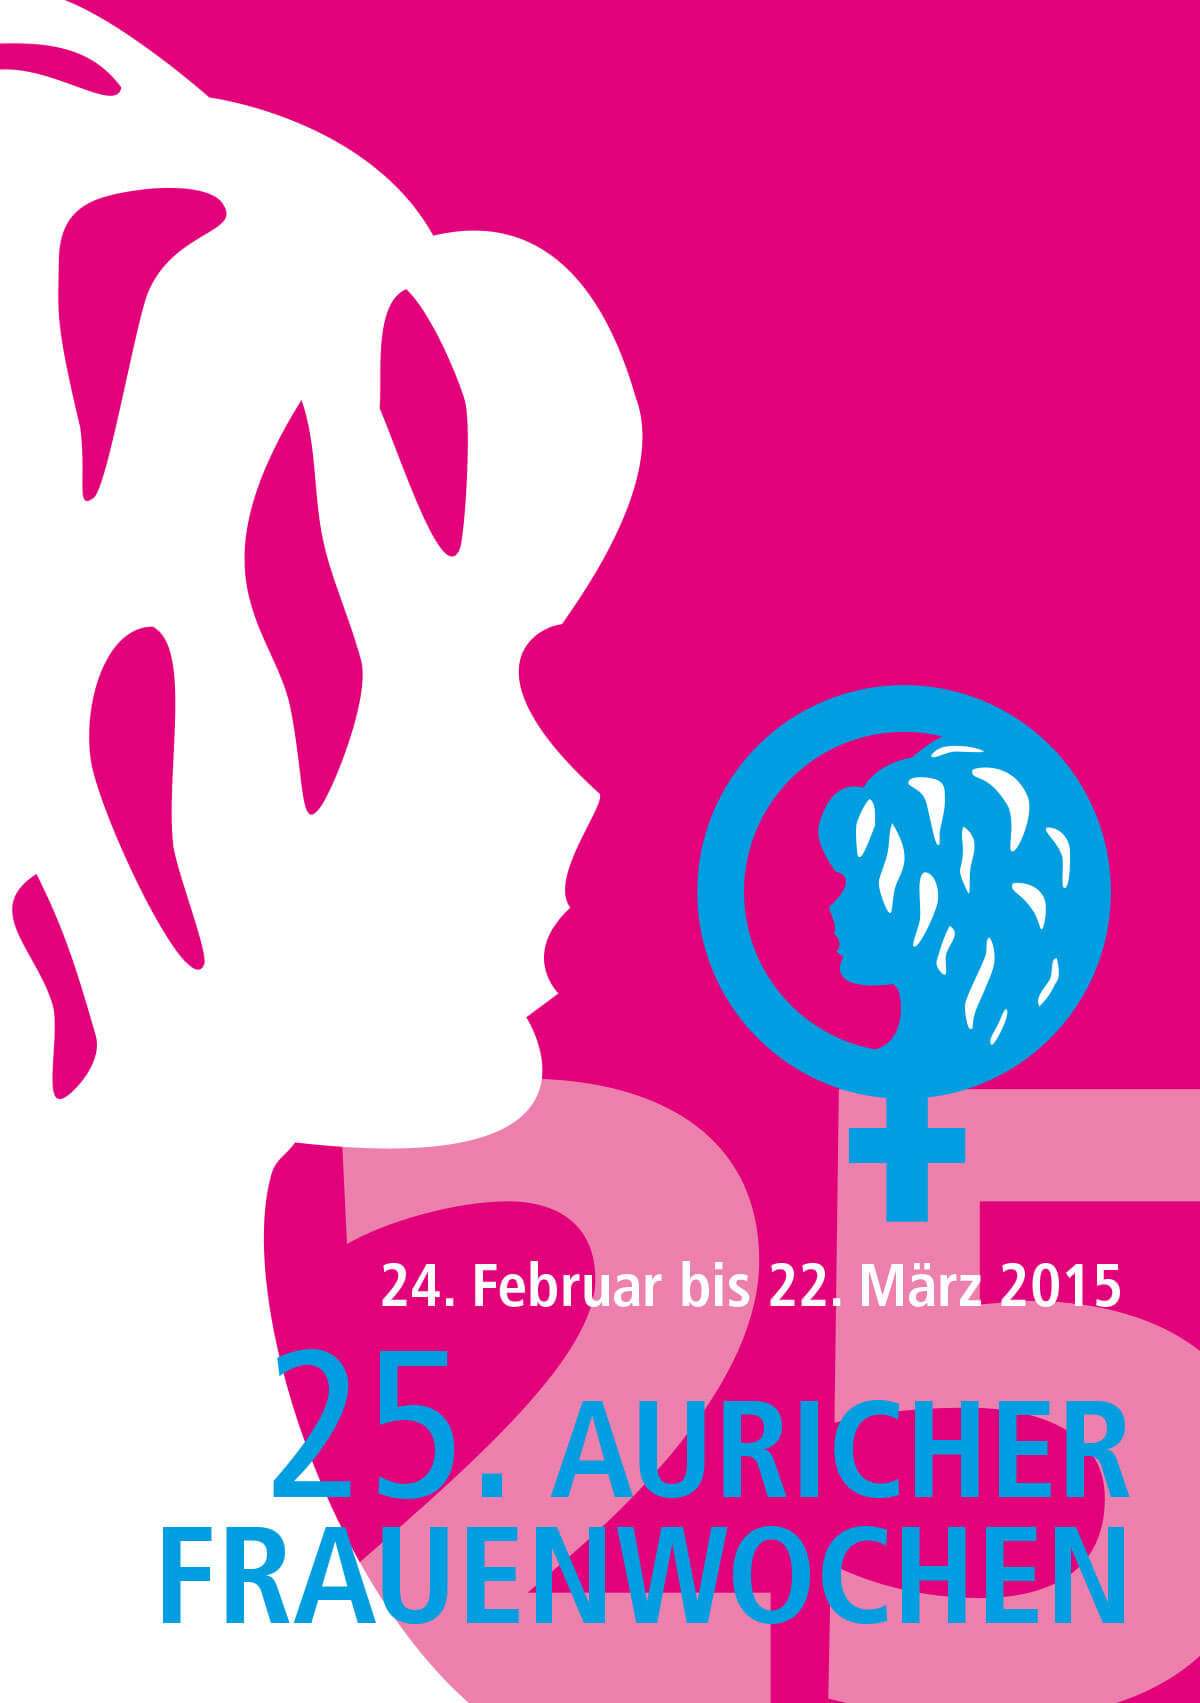 Programmheft 2015 anschauen – Auricher Frauenwochen